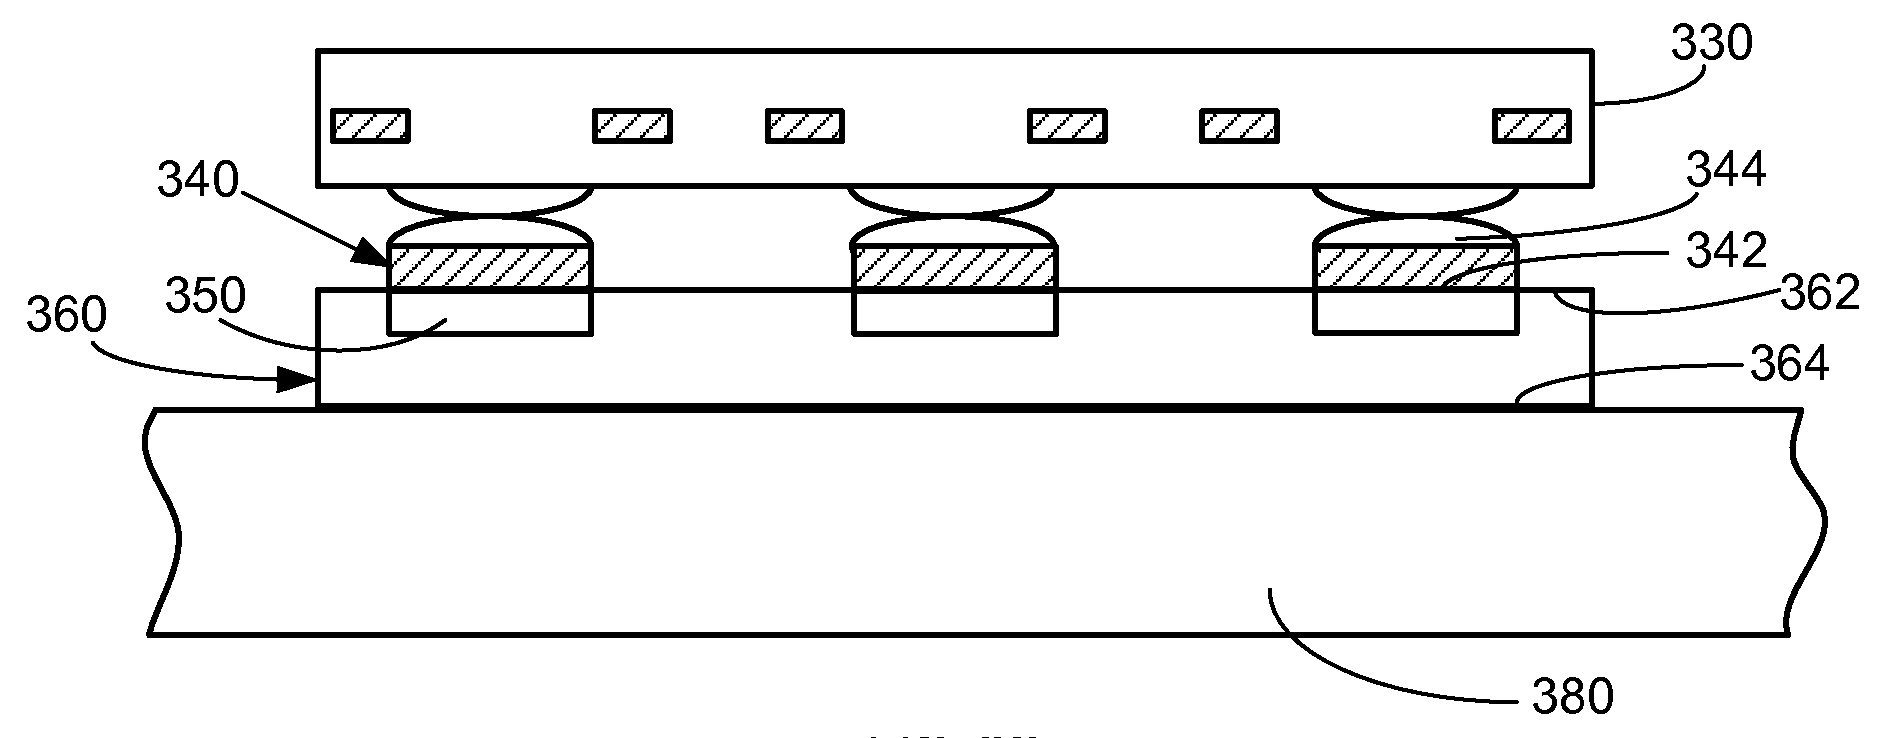 Method for fabricating backside-illuminated sensors